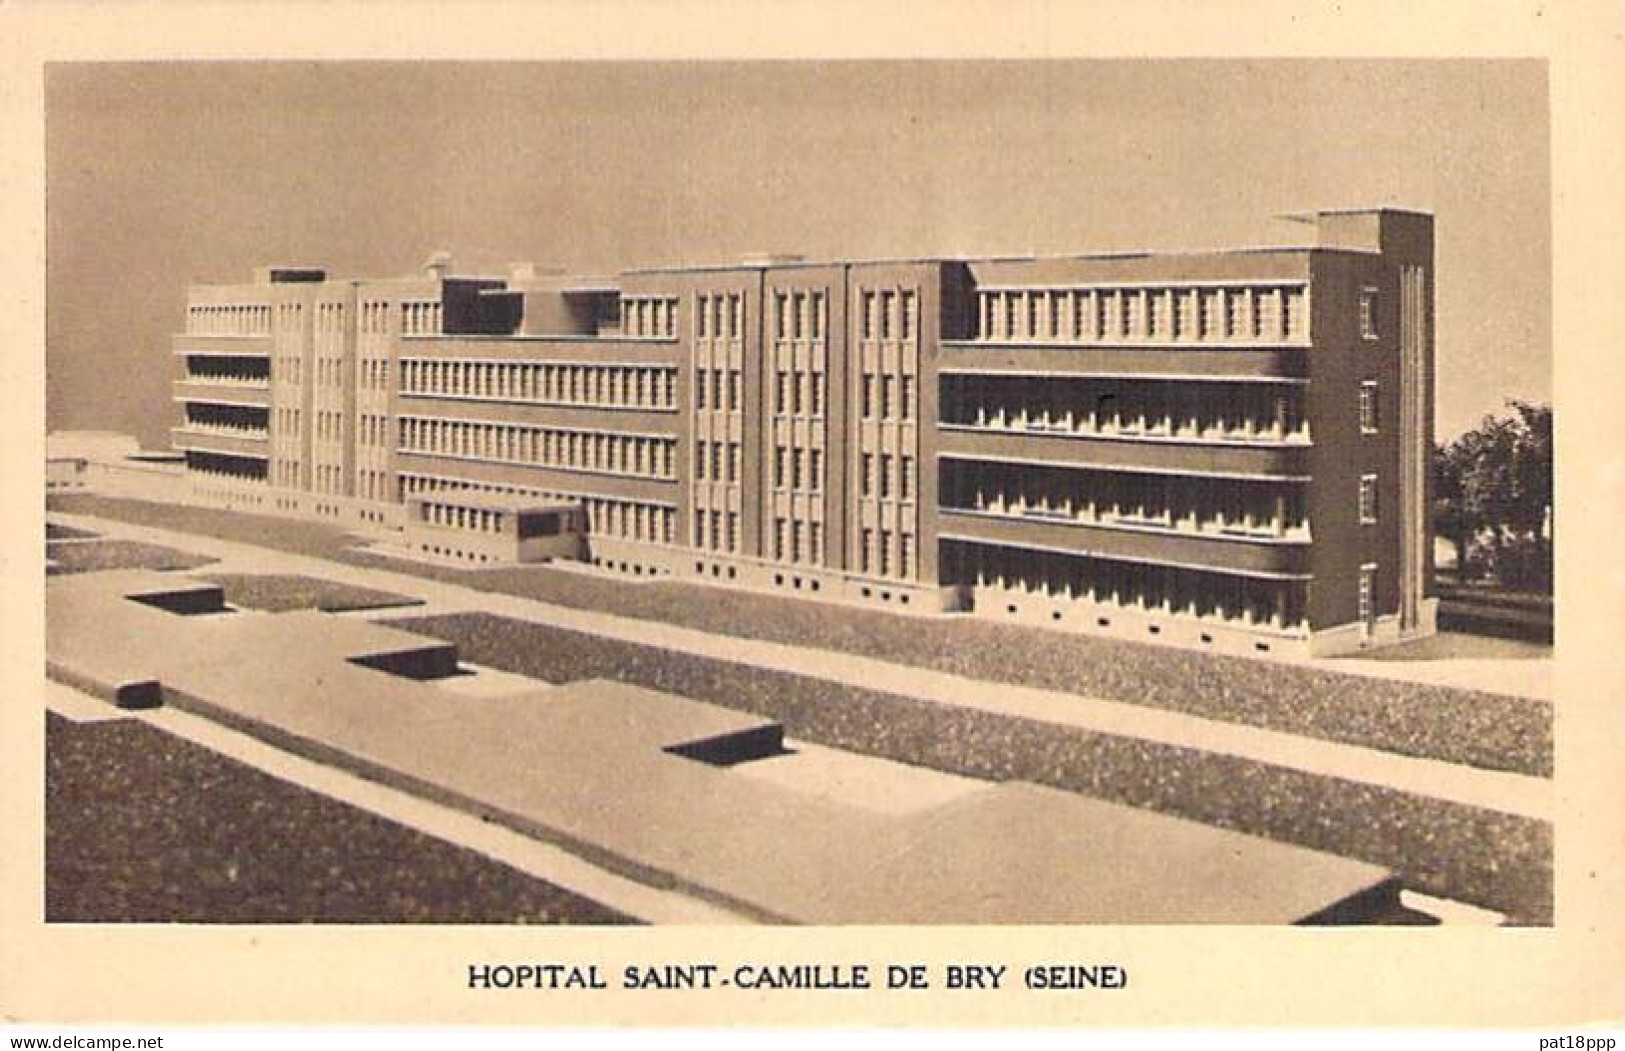 SANTE - HÔPITAL et Hotel-Dieu - Lot de 20 Cartes FRANCE (13 CPSM et 7 CPM grand format)